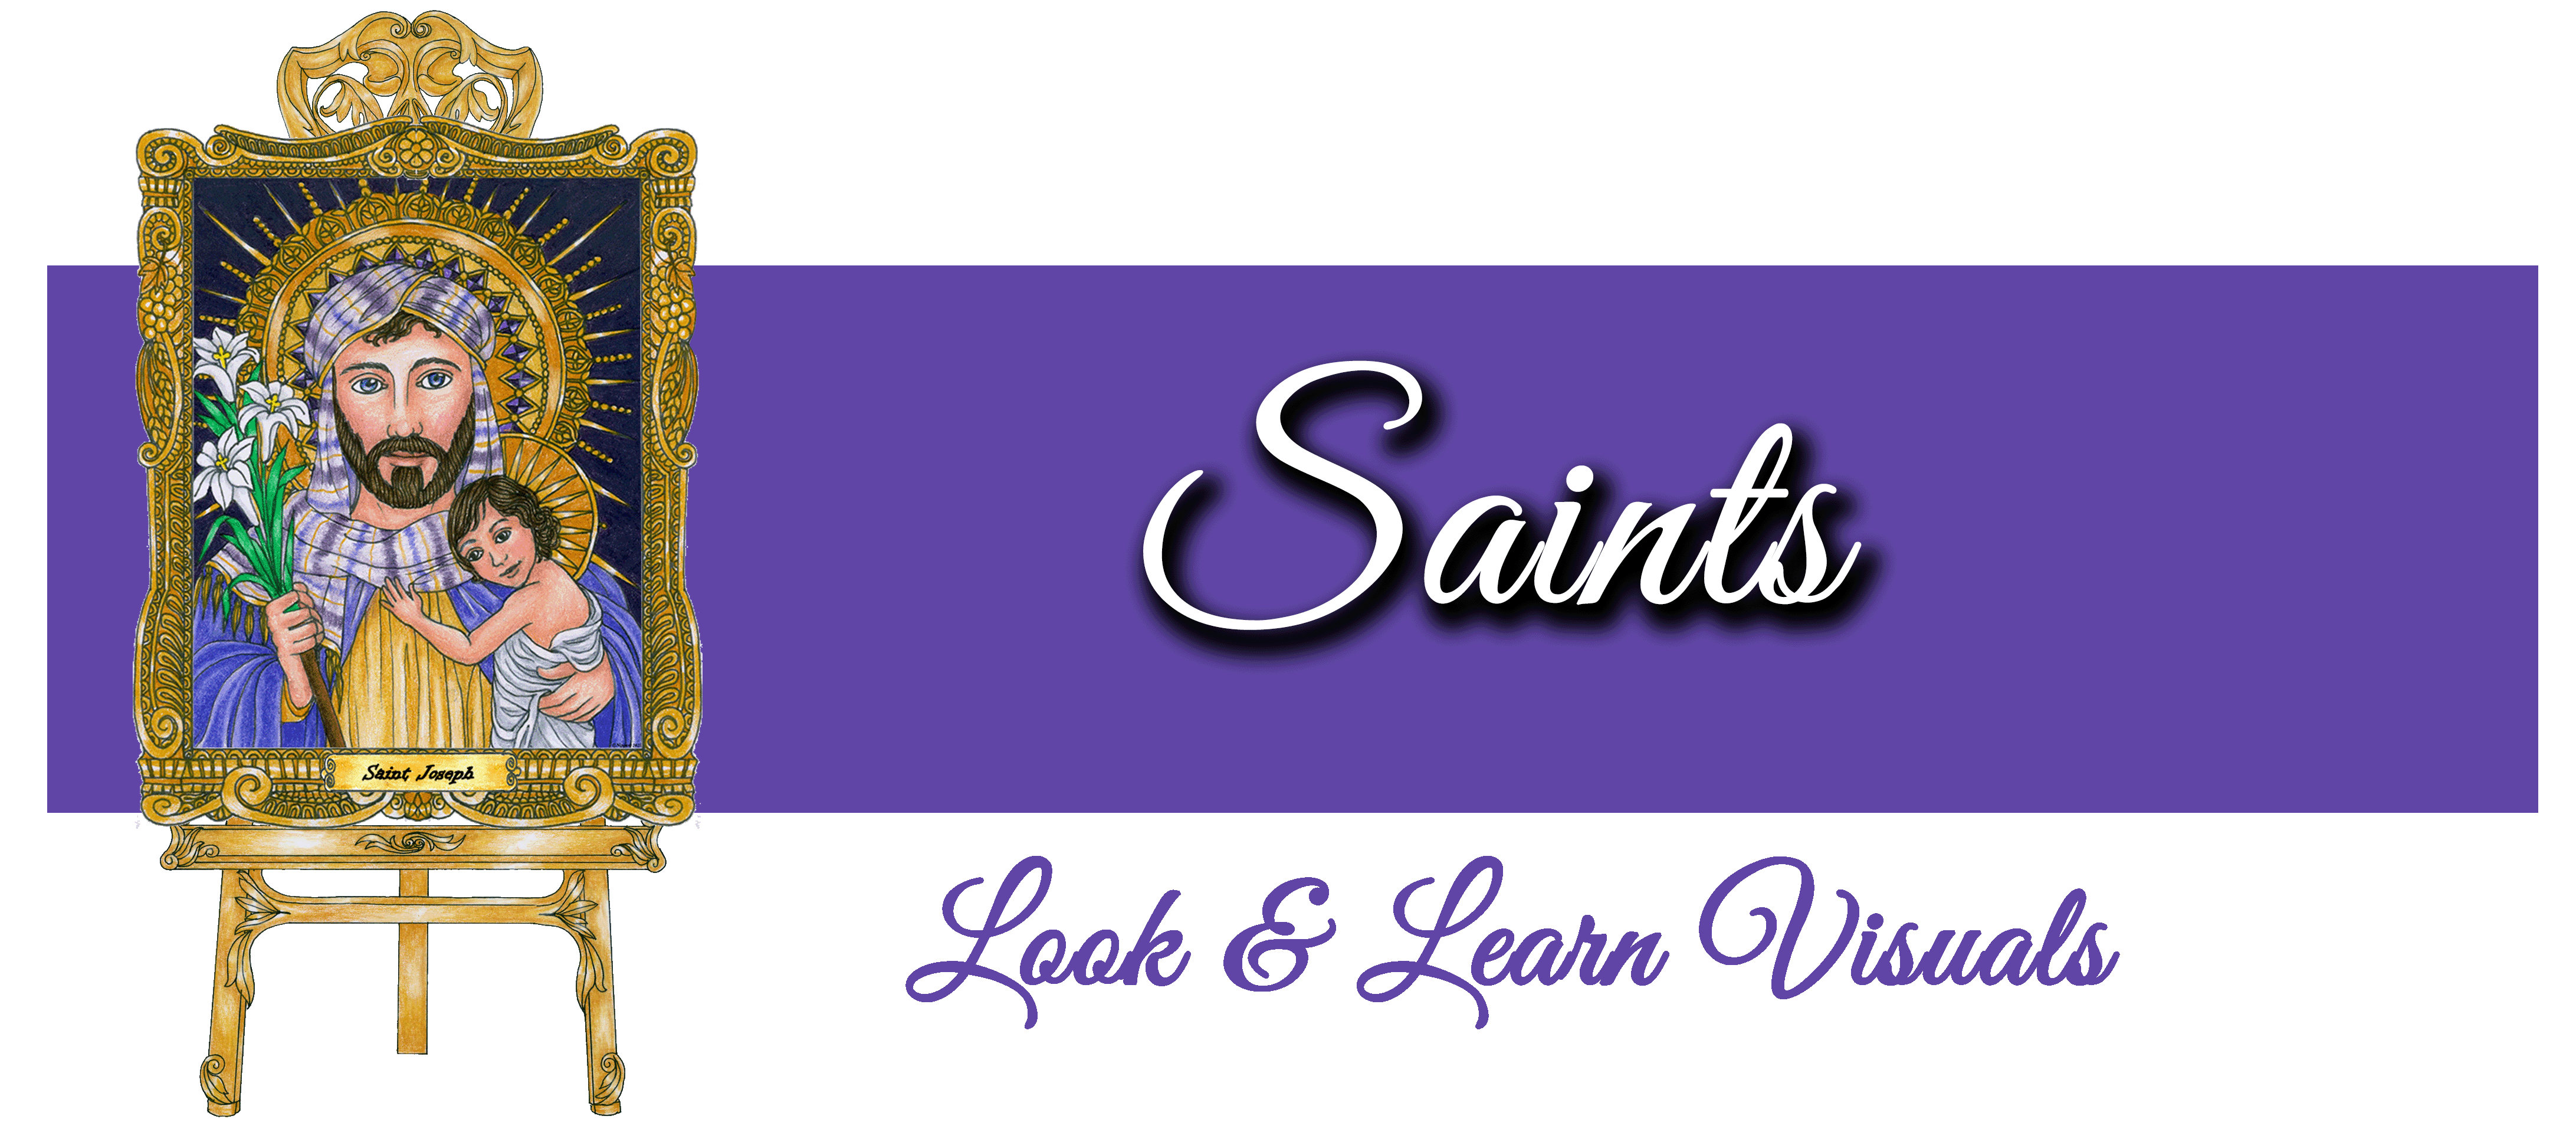 Look & Learn Saints